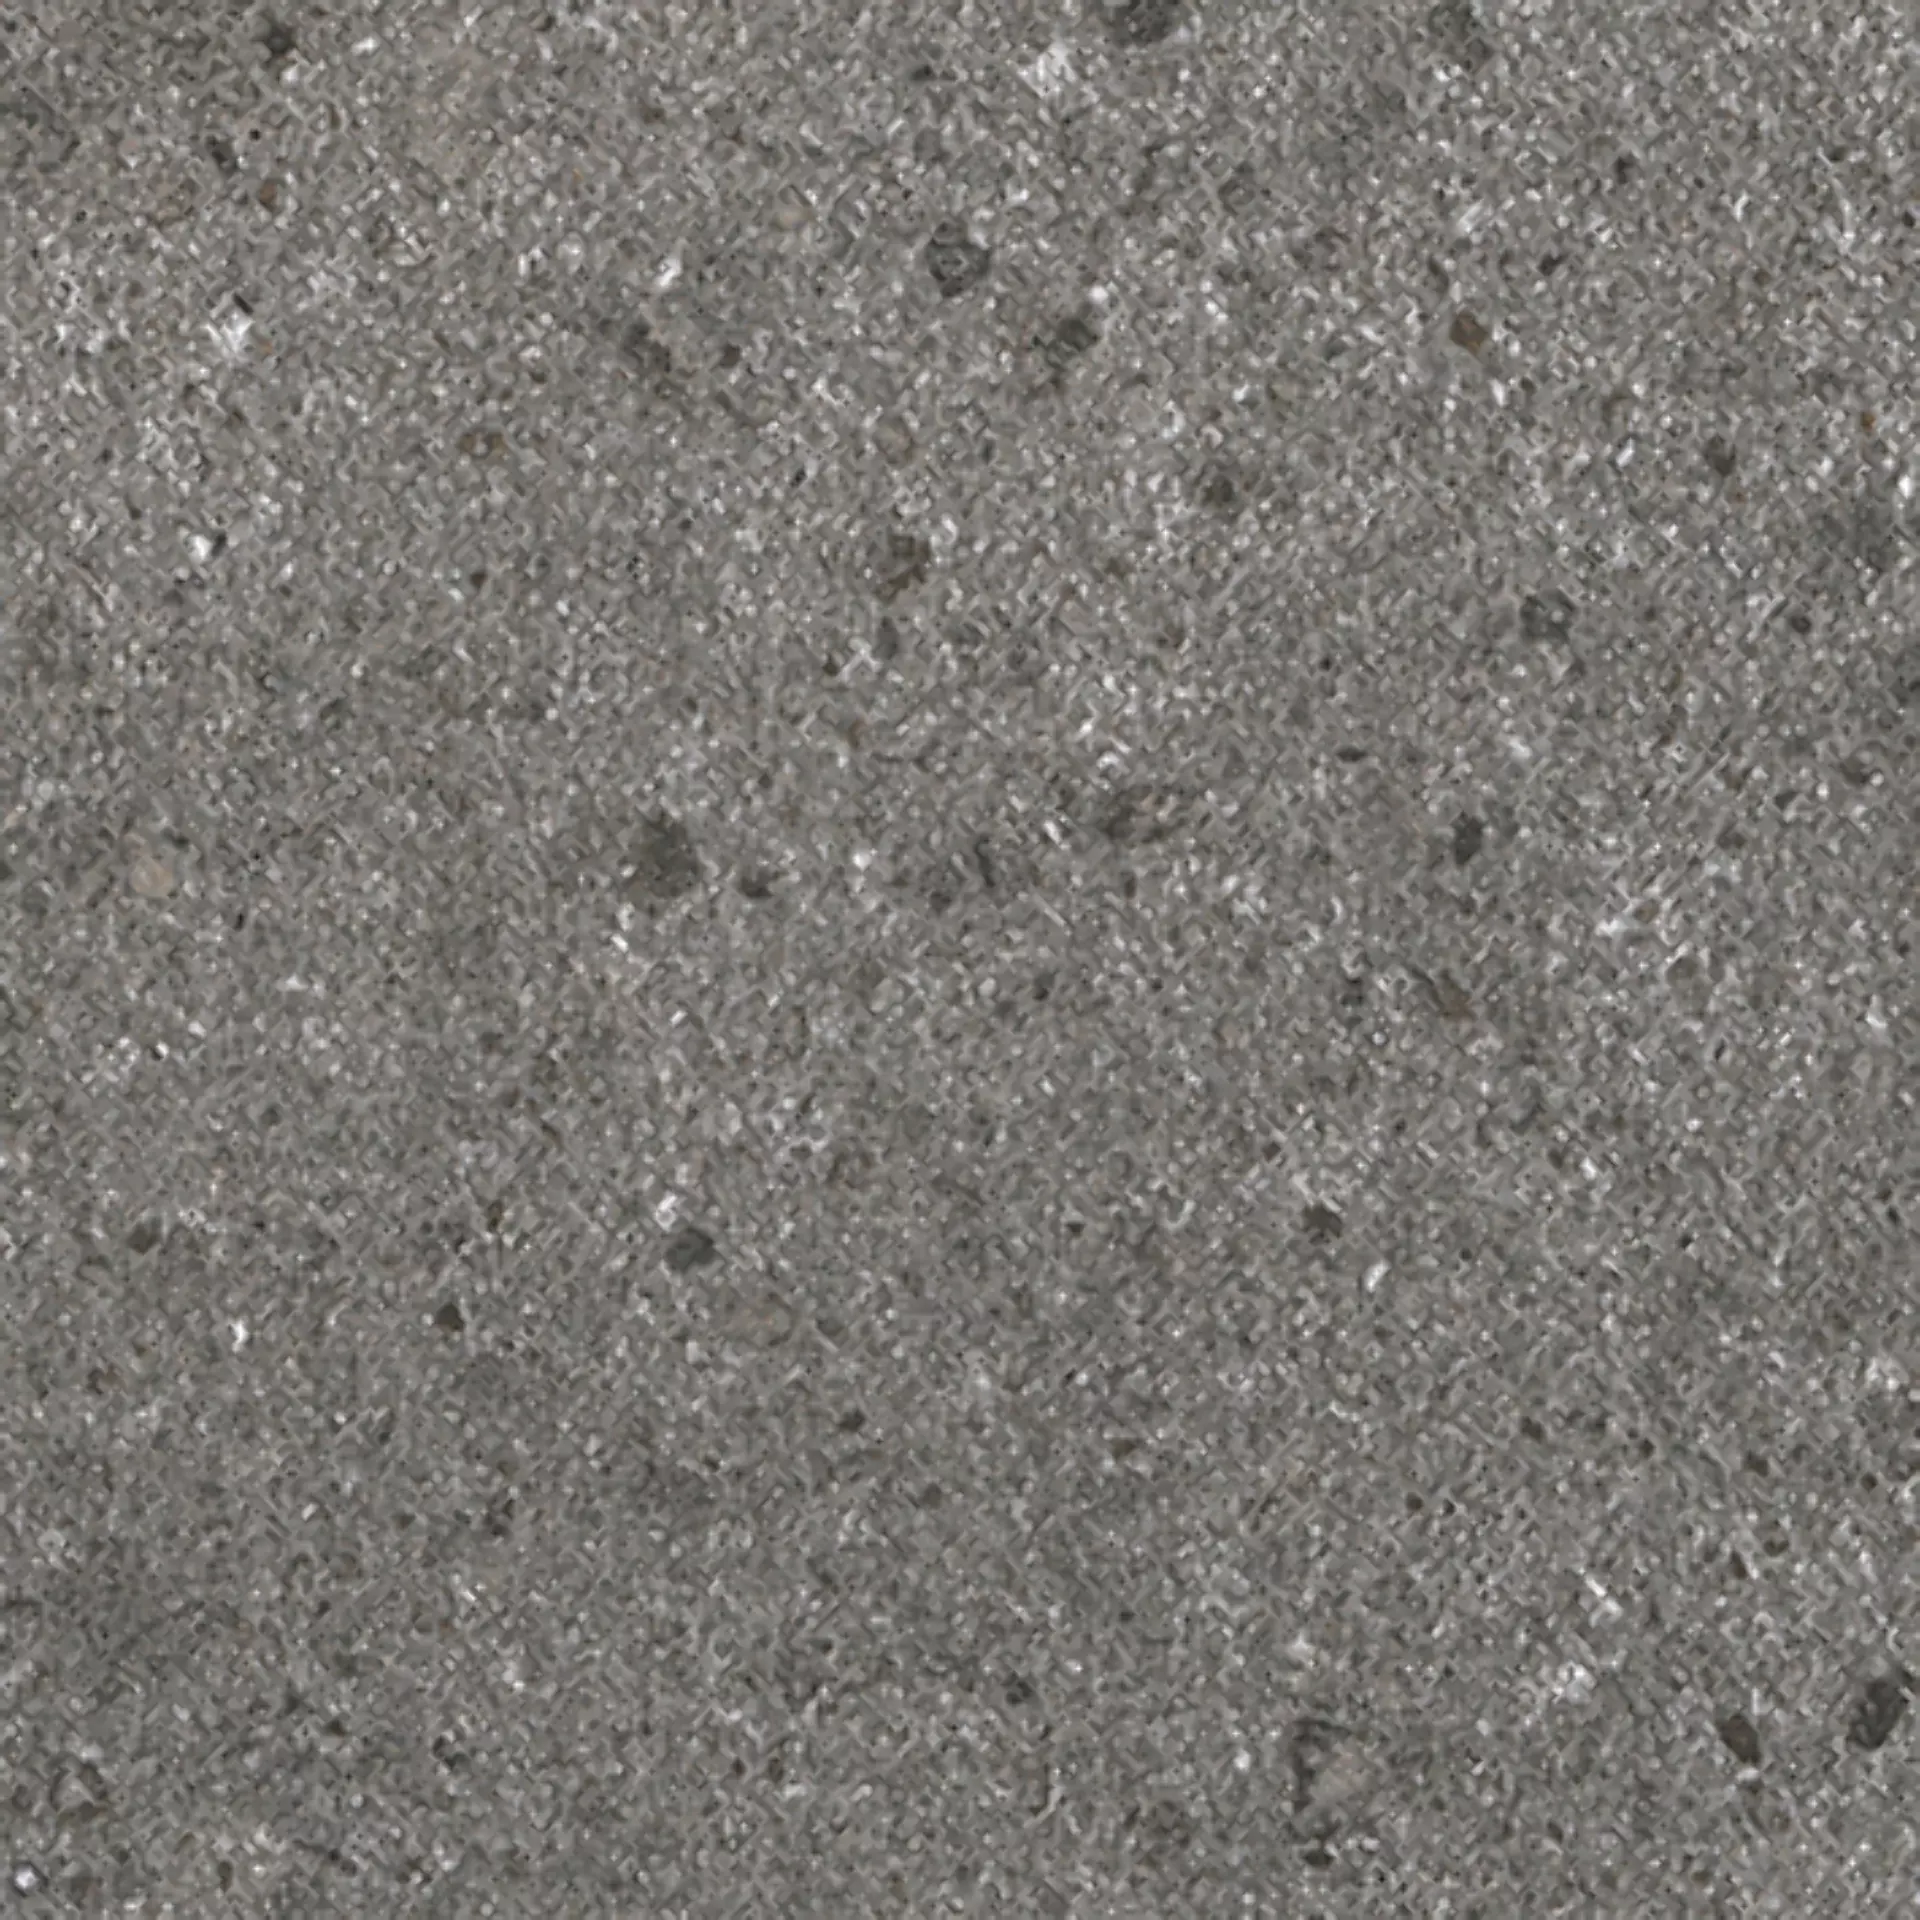 Wandfliese,Bodenfliese Villeroy & Boch Aberdeen Slate Grey Matt Slate Grey 2628-SB9V matt 30x30cm rektifiziert 10mm